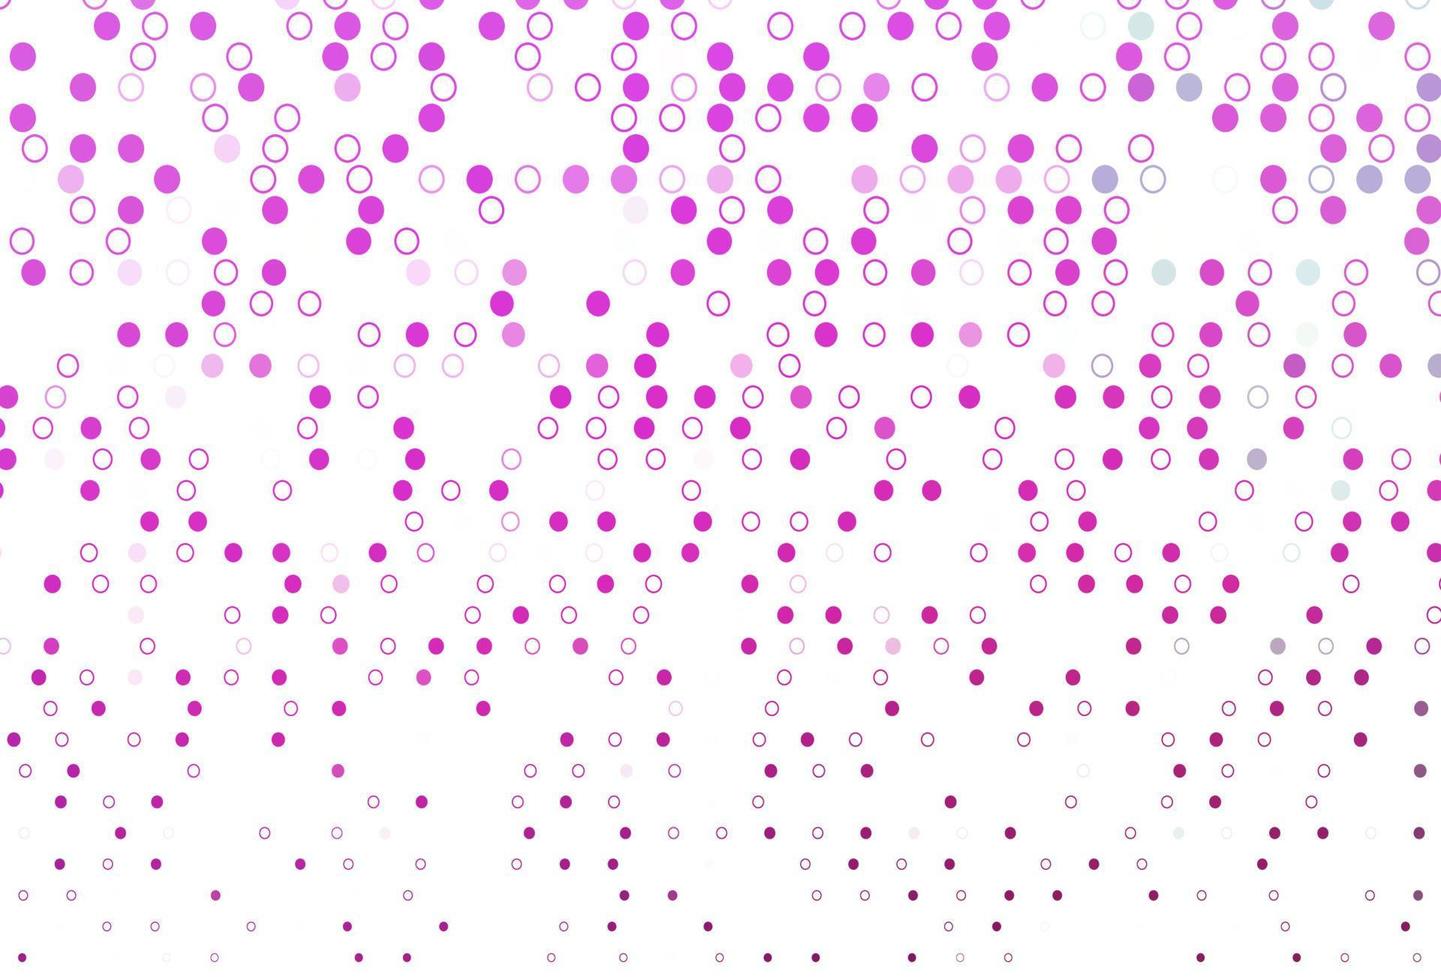 sfondo vettoriale rosa chiaro con punti.